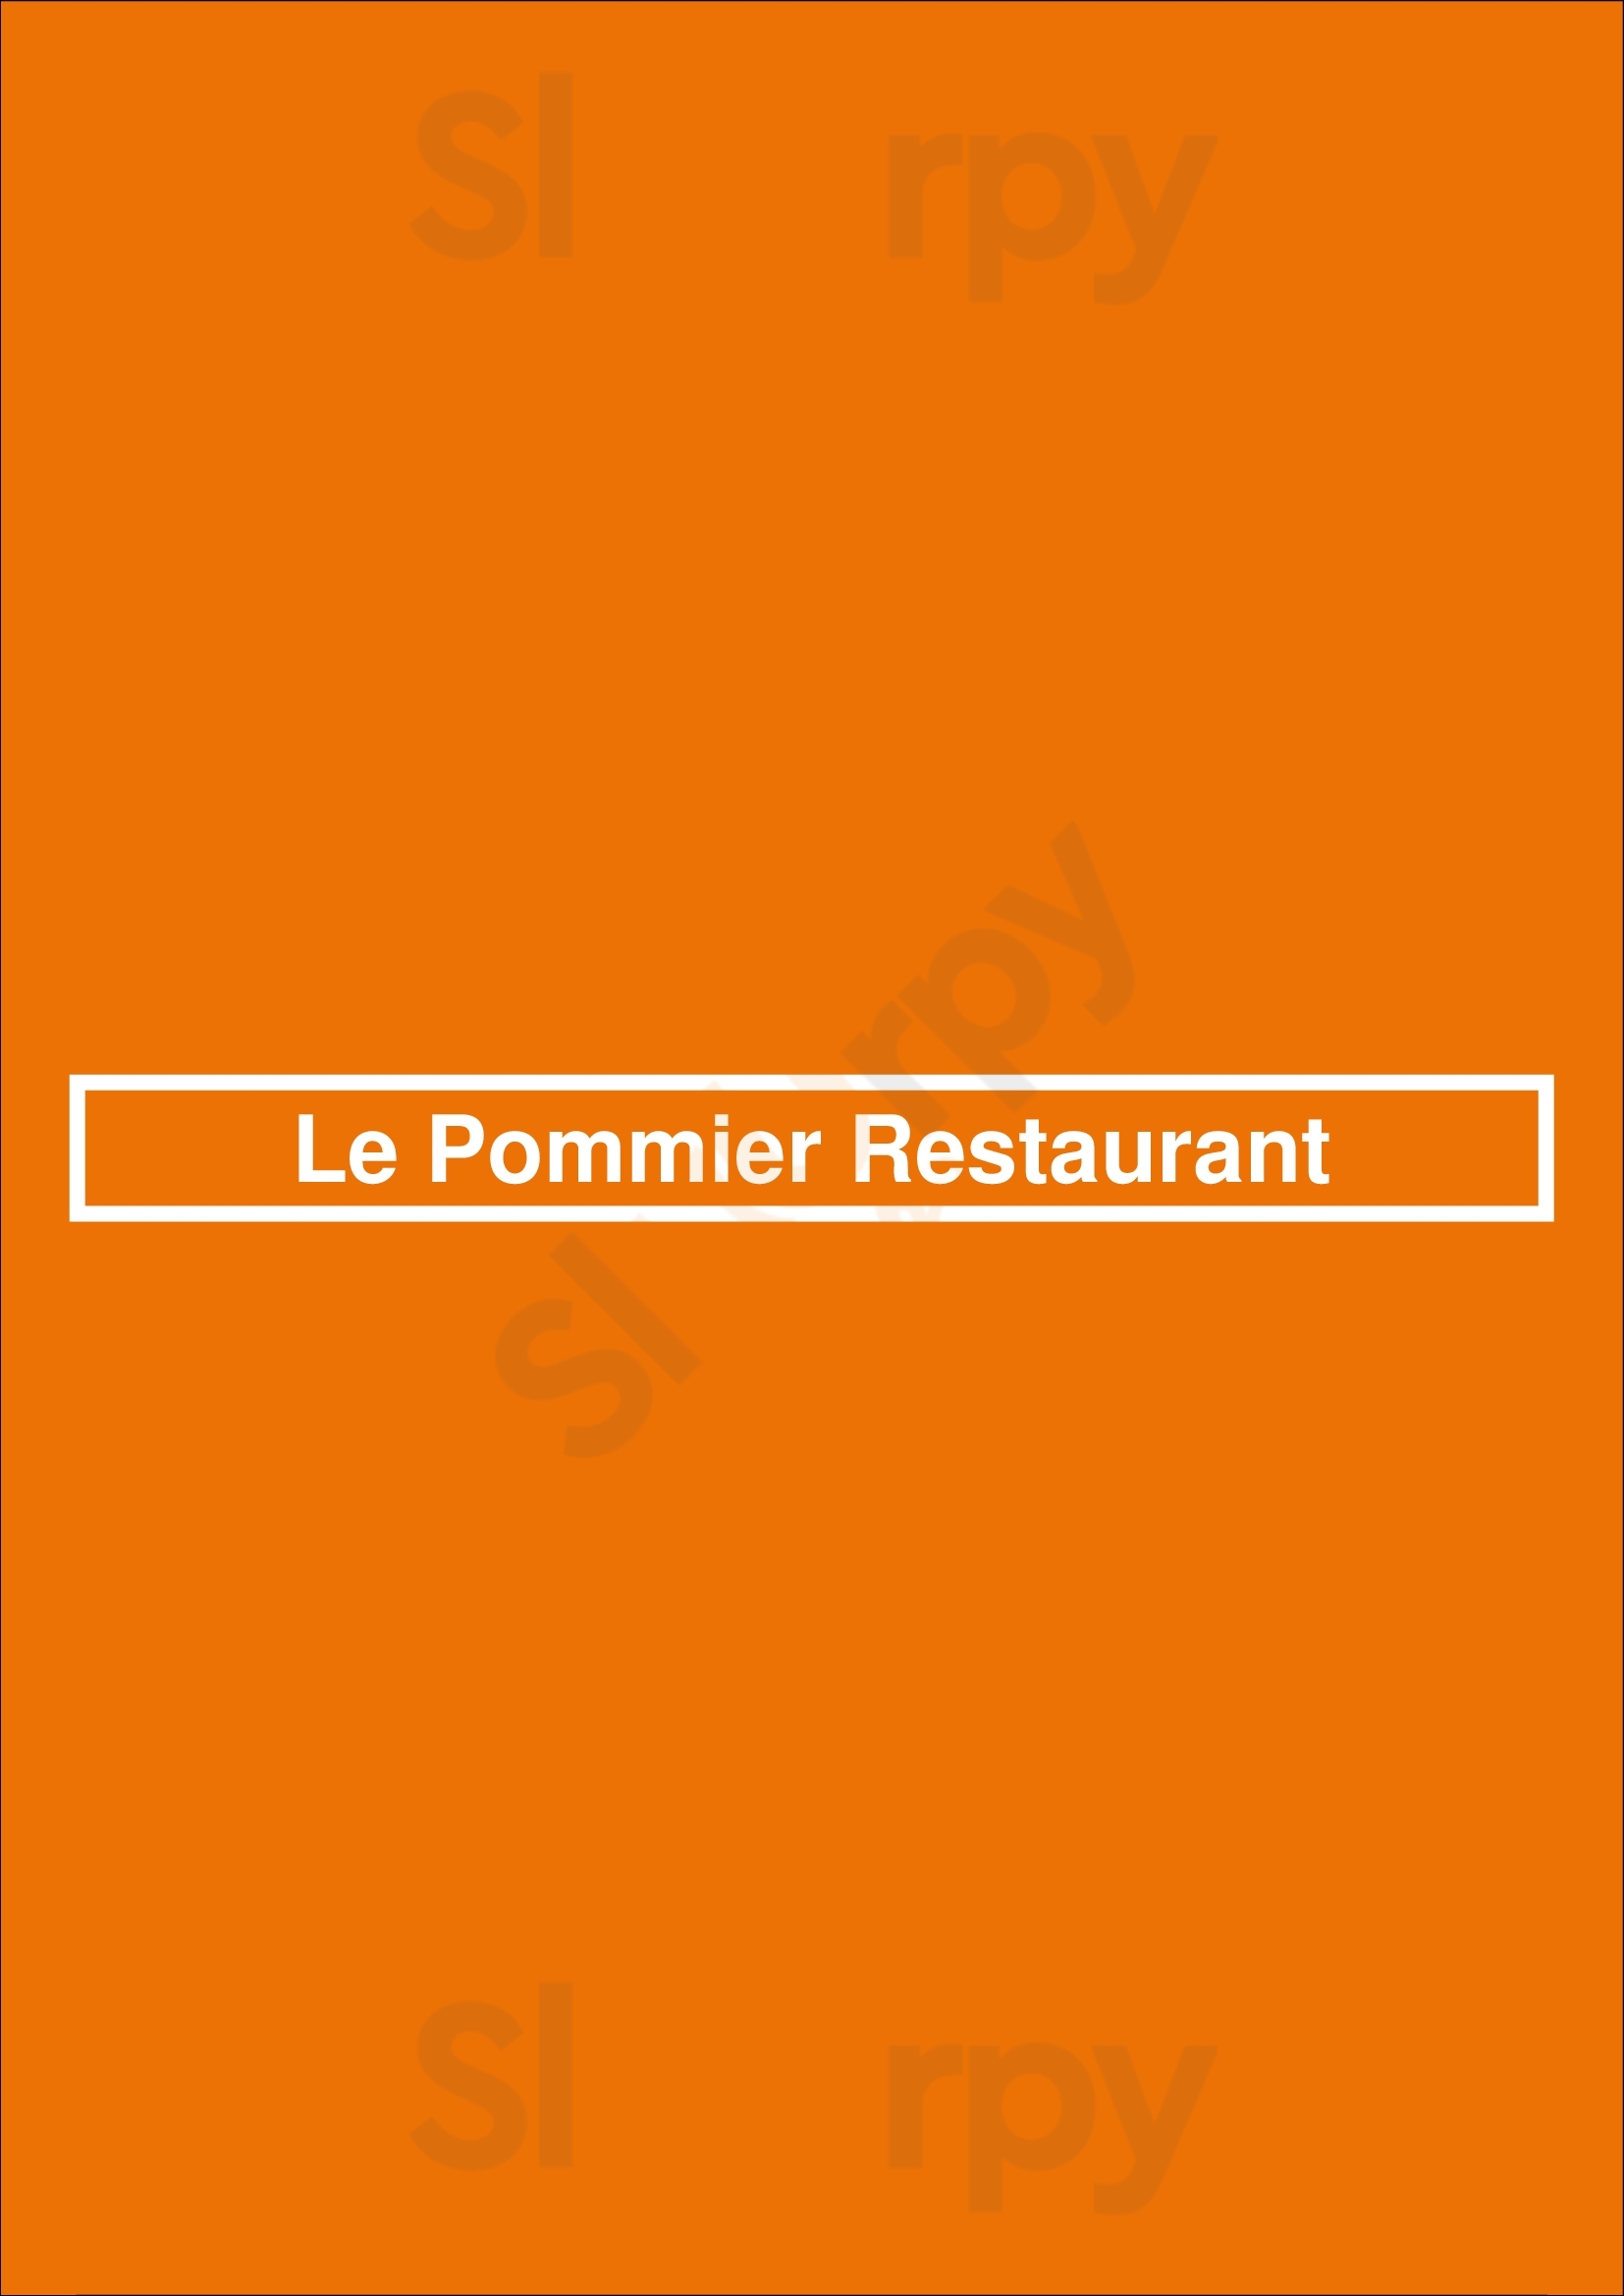 Le Pommier Restaurant Bayeux Menu - 1